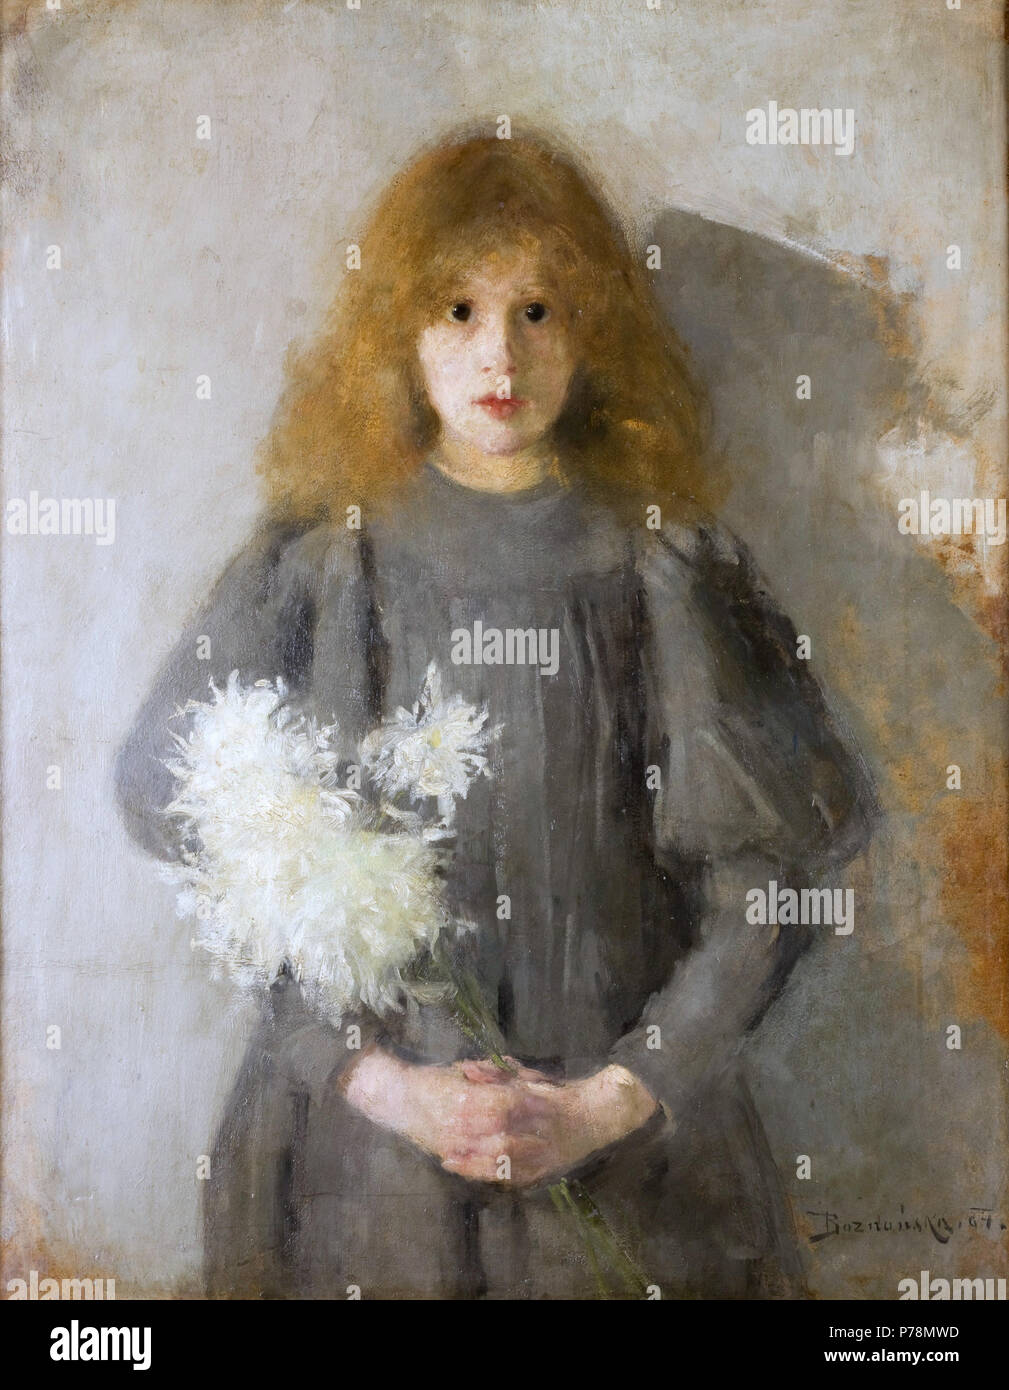 1 Olga Boznańska 1894 Dziewczynka chryzantemy Stock Photo - Alamy